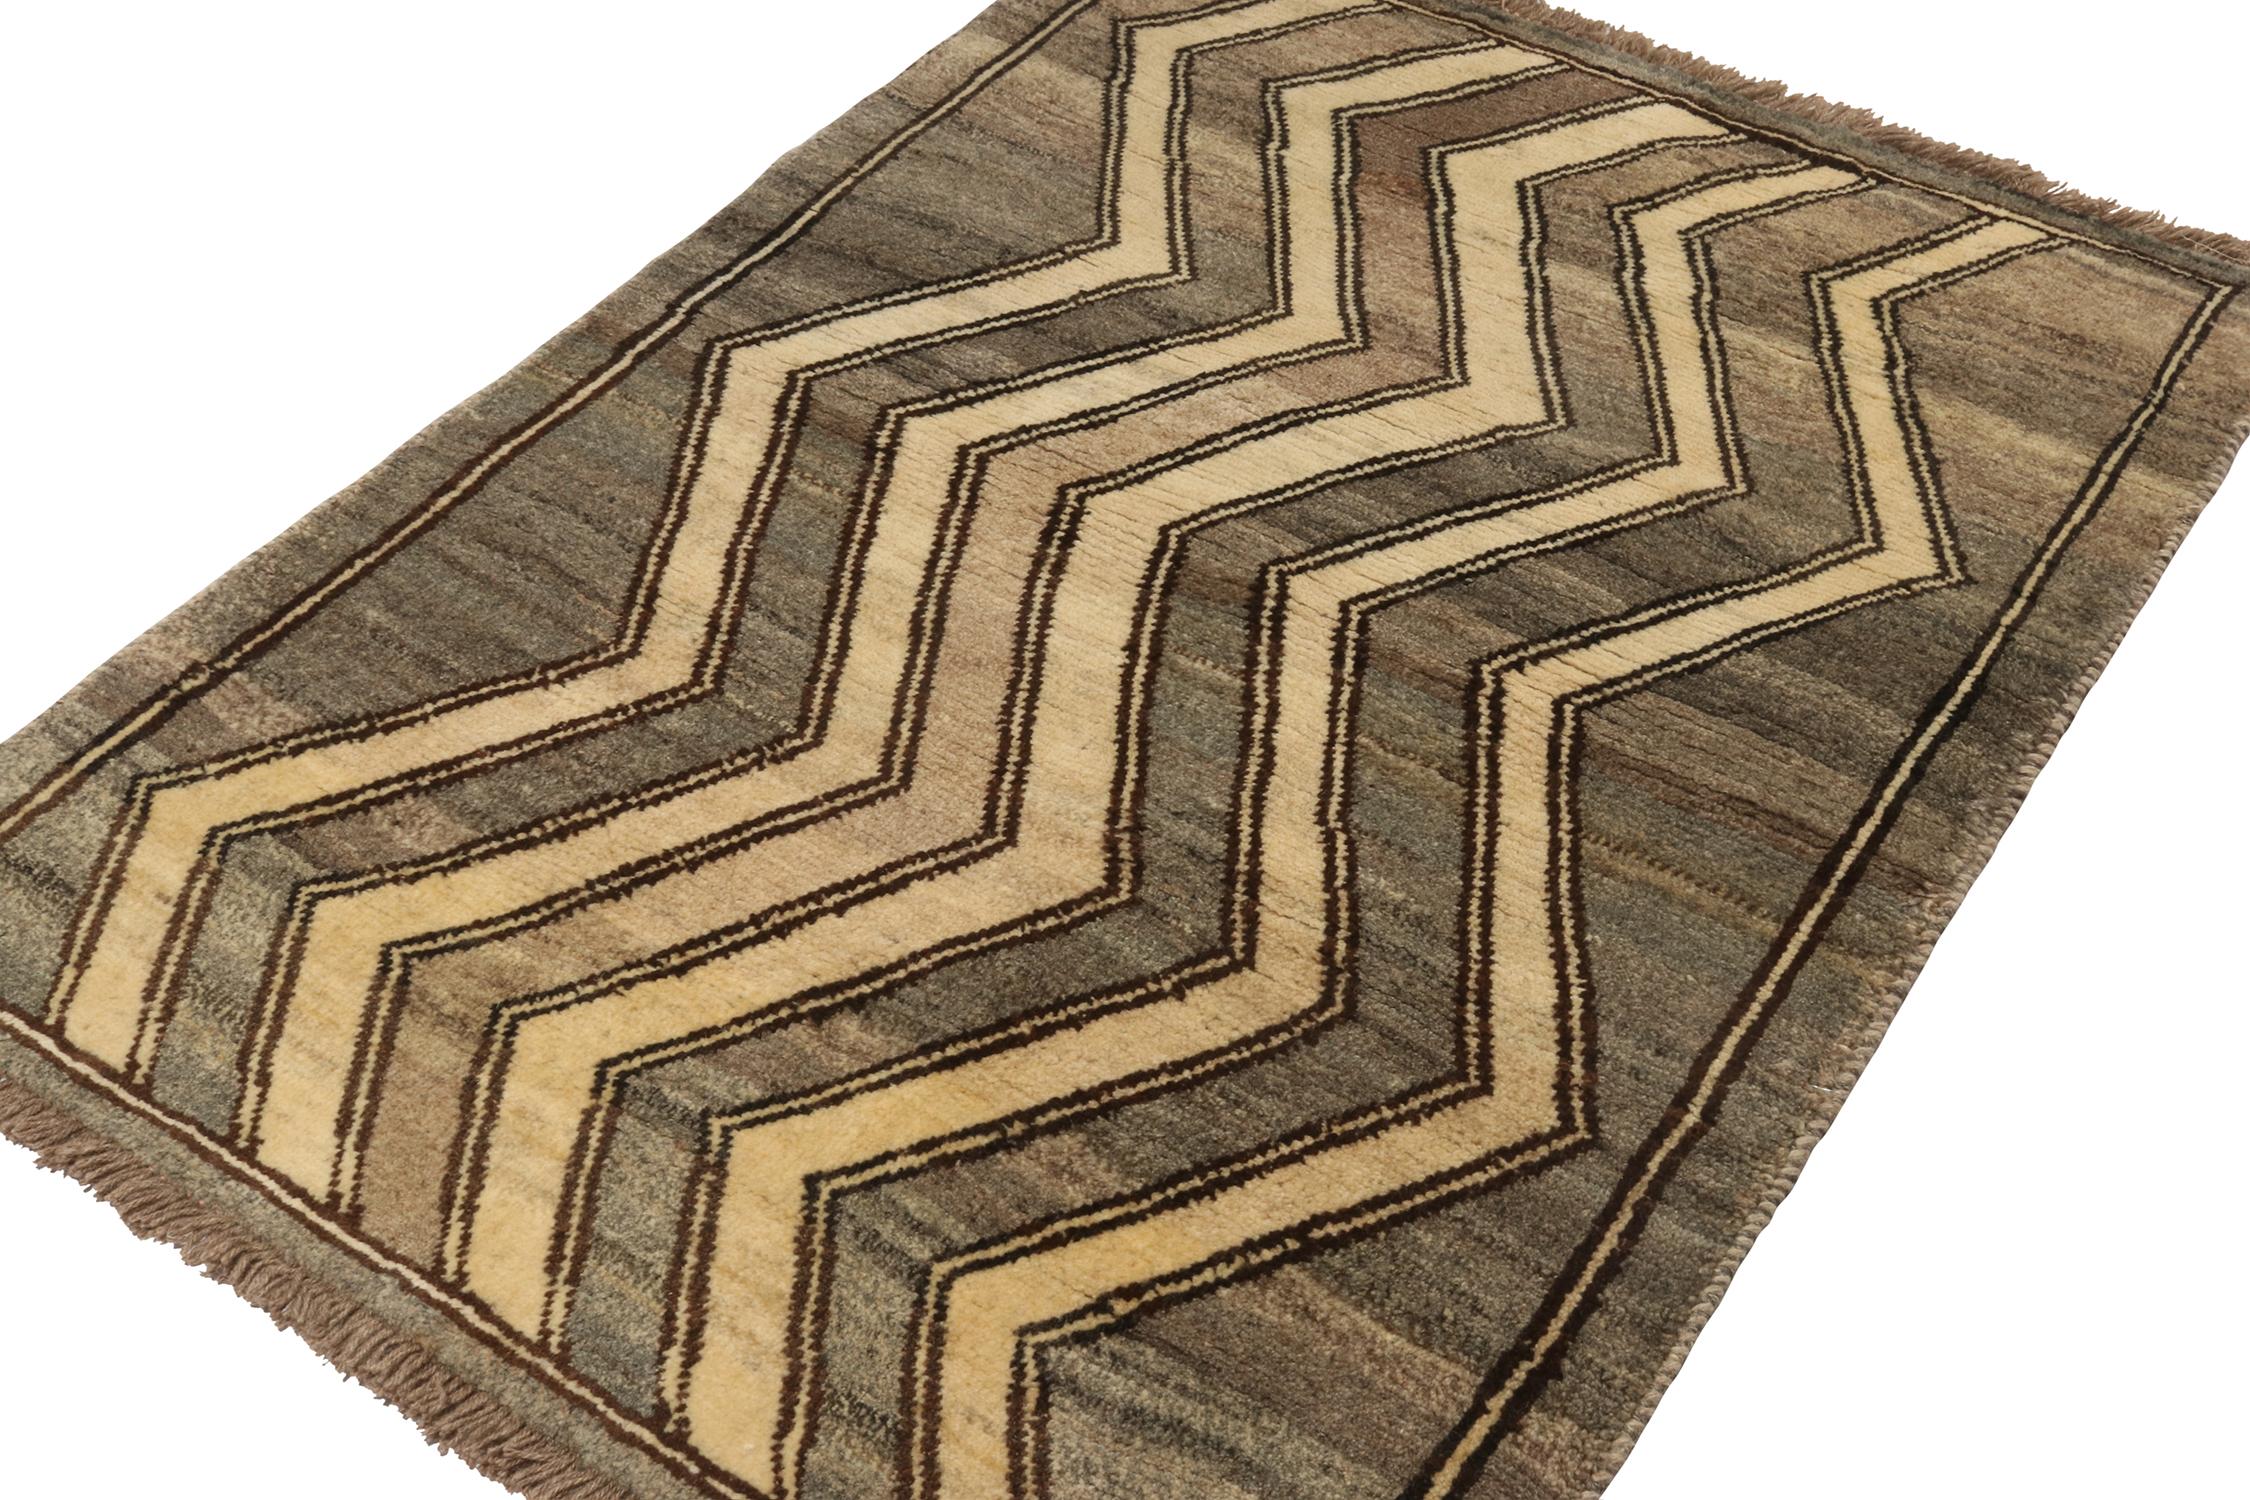 Ein alter persischer Gabbeh-Teppich (4x7) ist der jüngste Beitrag zu Rug & Kilims Kuration seltener Stammeskunstwerke. Handgeknüpft aus Wolle, ca. 1950-1960.
Über das Design:
Dieses Muster zeigt Chevrons in Beige-Braun auf einem wunderschönen,